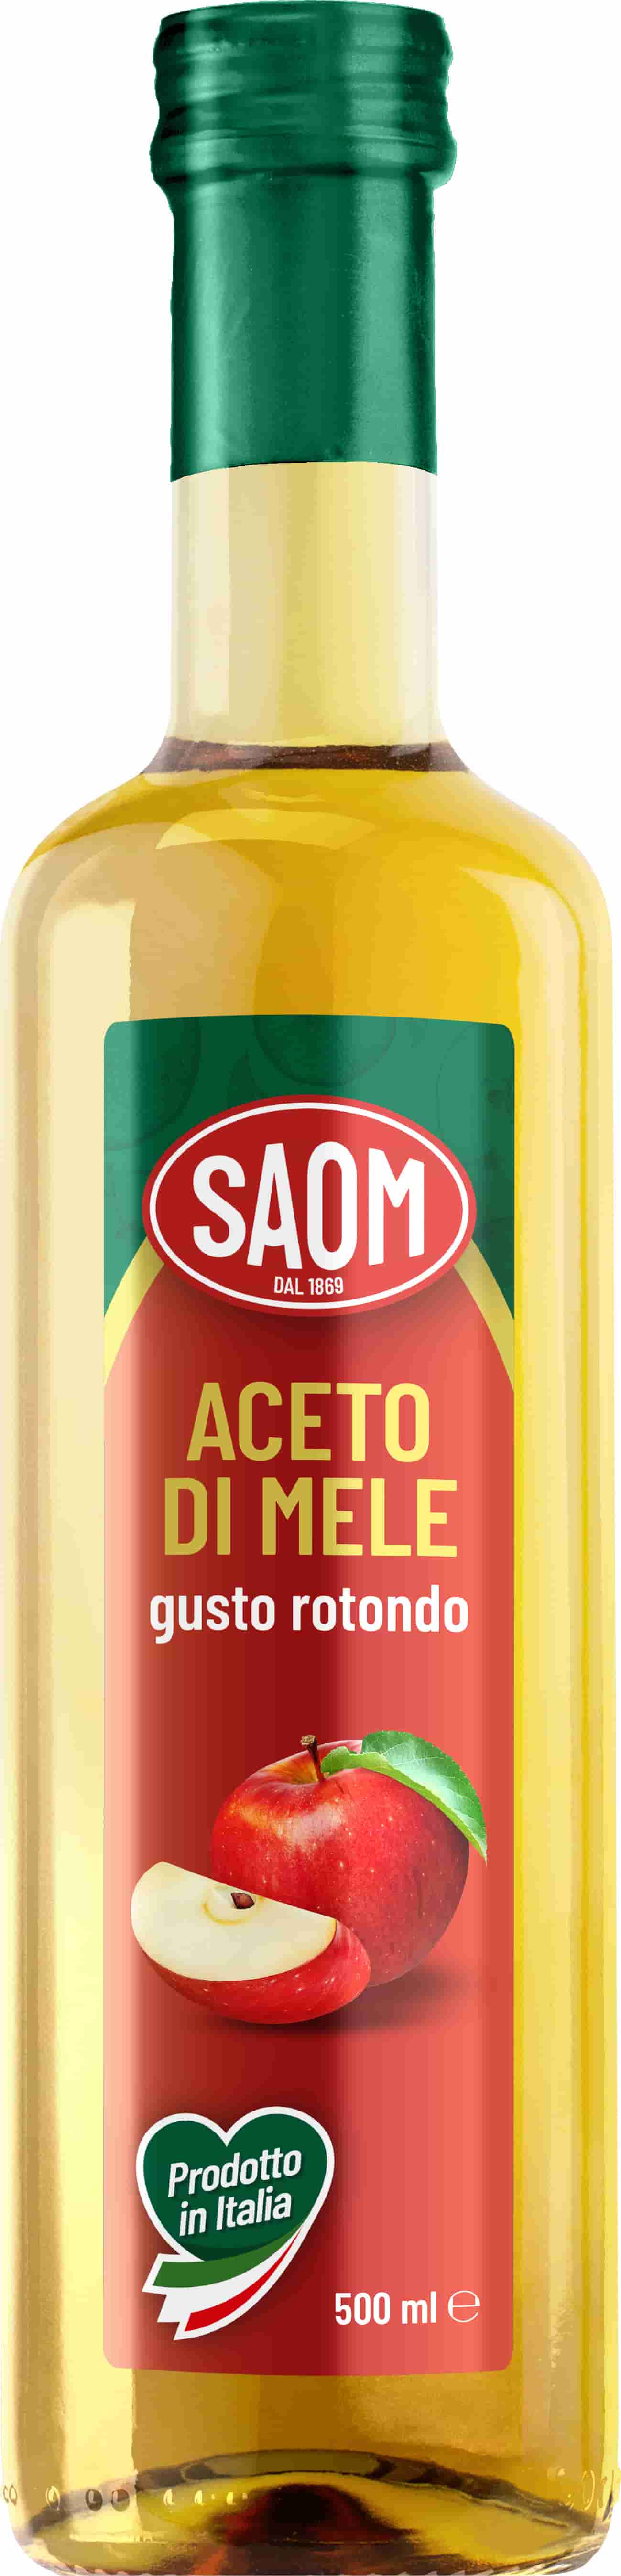 12x Saom Aceto di Mele 500ml Gusto Rotondo Prodotto Made in Italy 12x500ml.